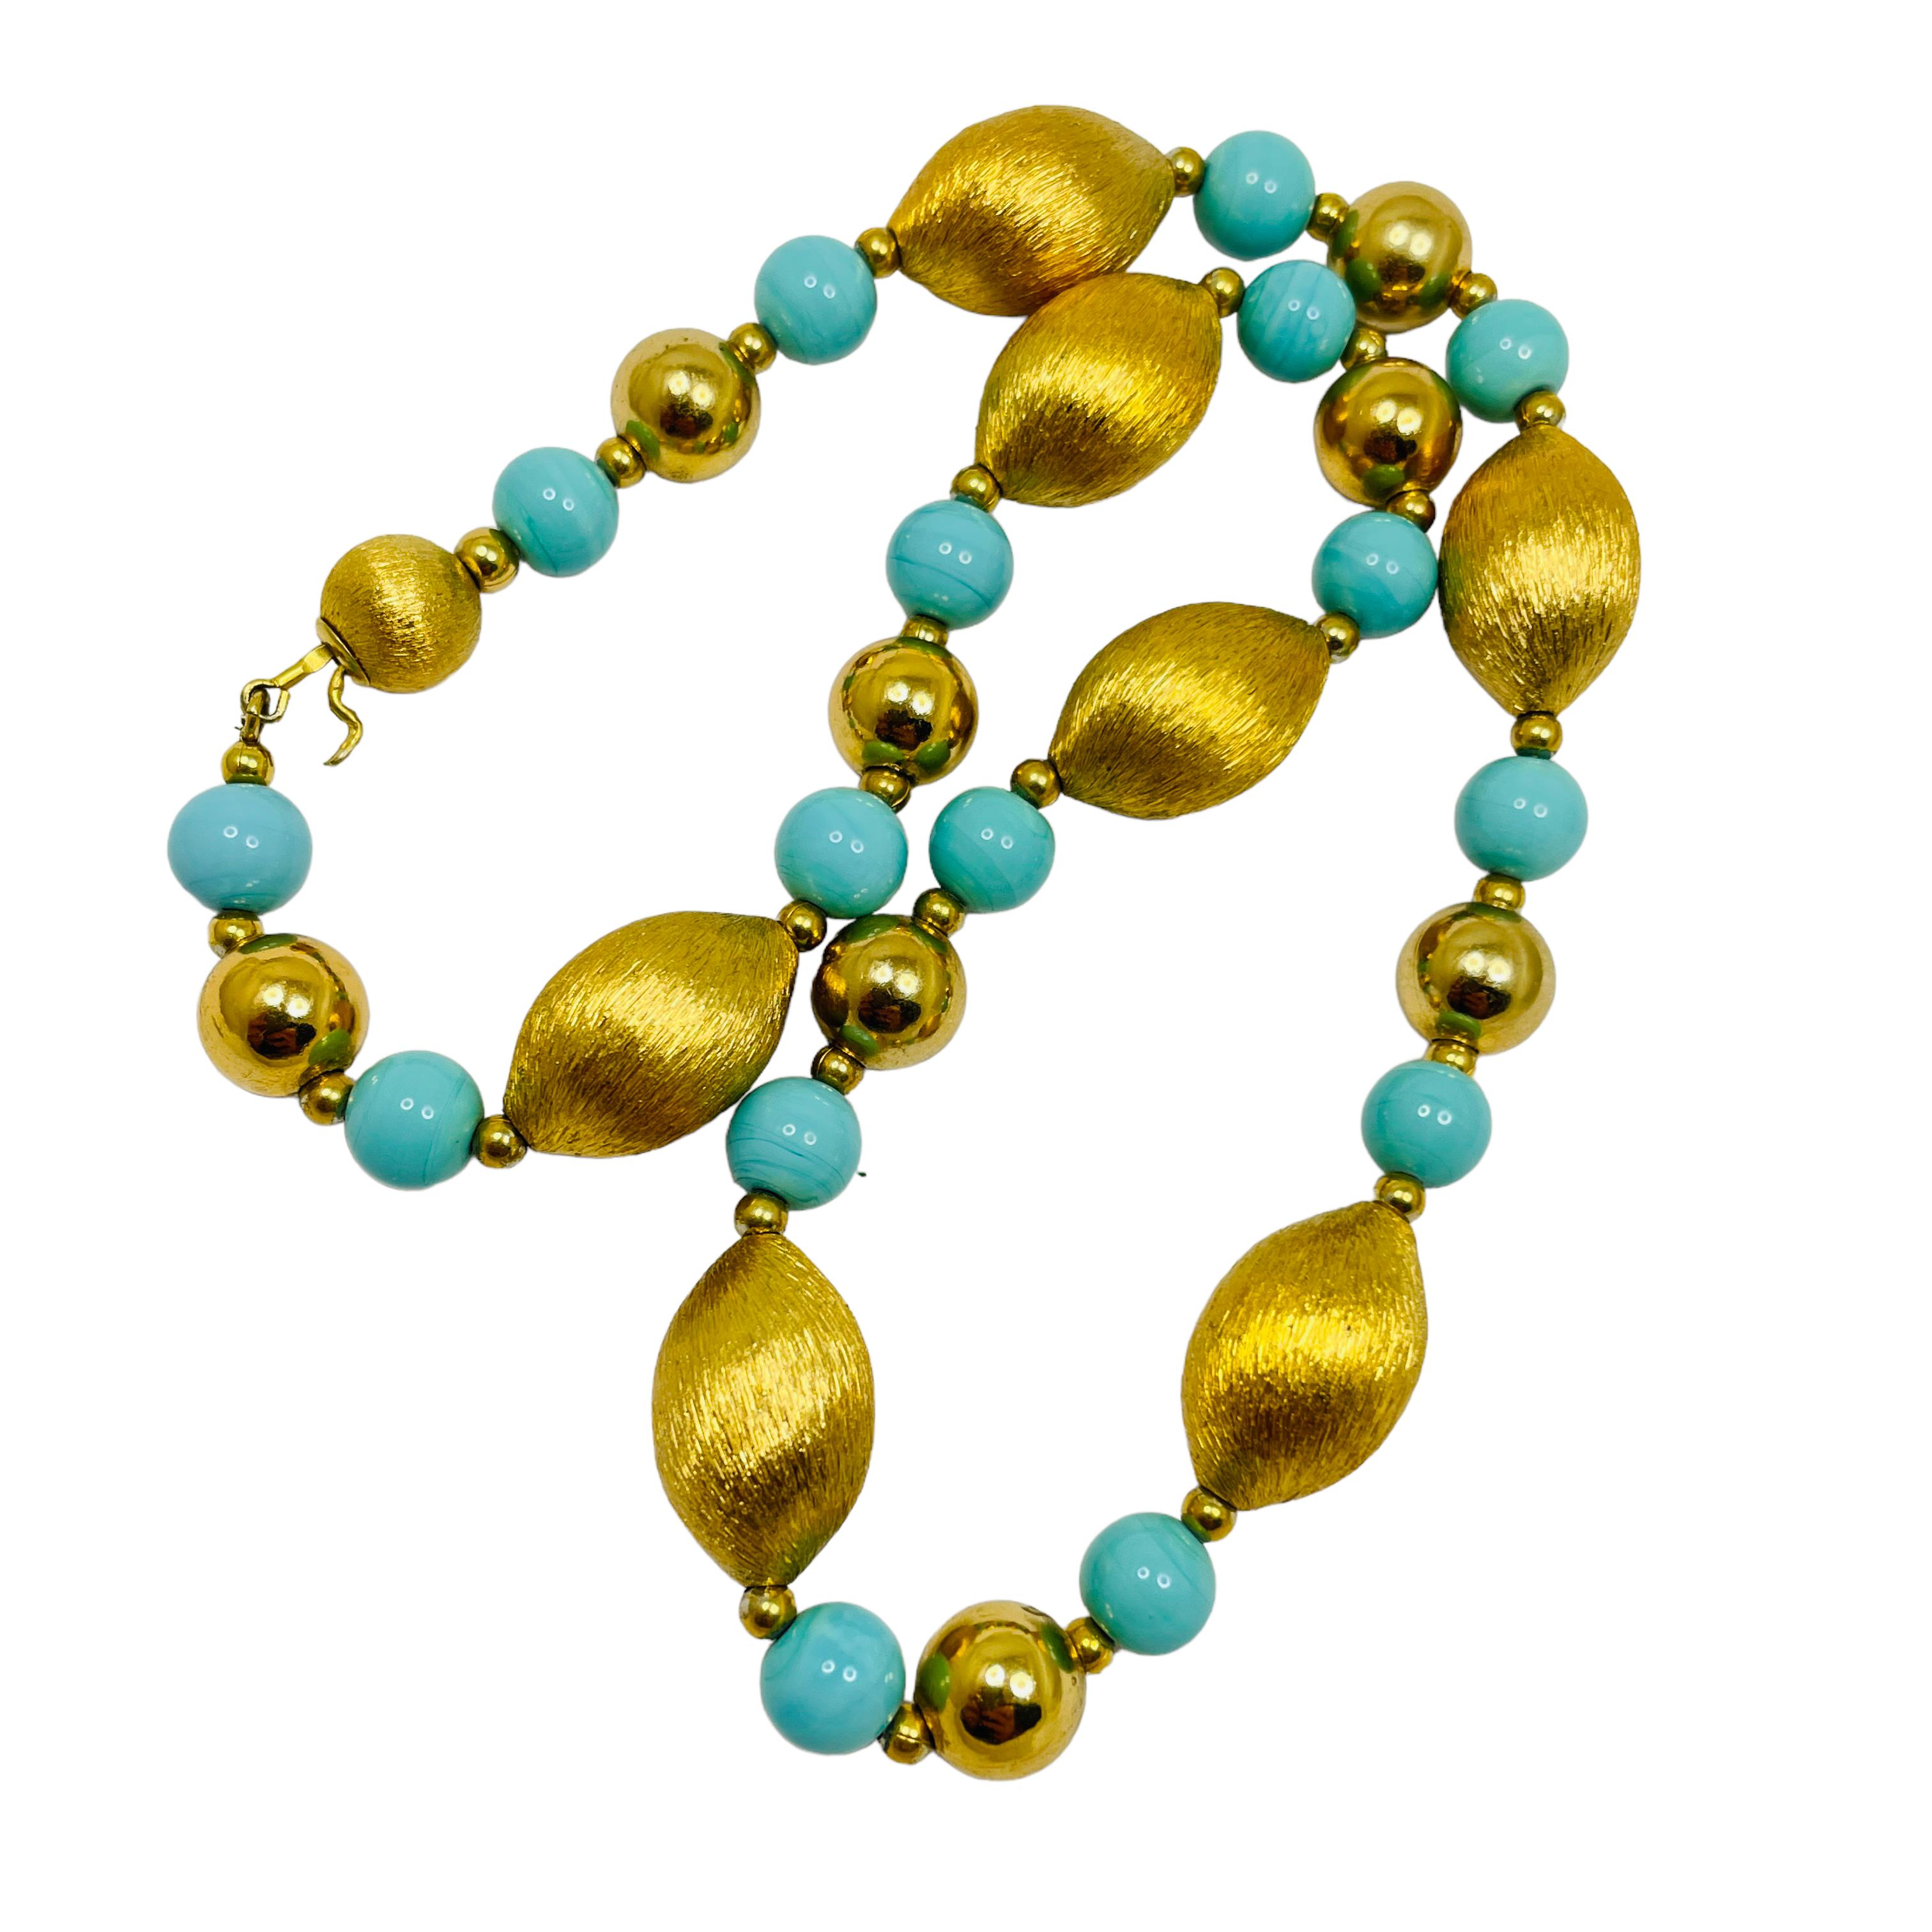 DÉTAILS

• non signé 

• perles en verre de couleur or

• collier de créateur vintage

MESURES

• 16,75